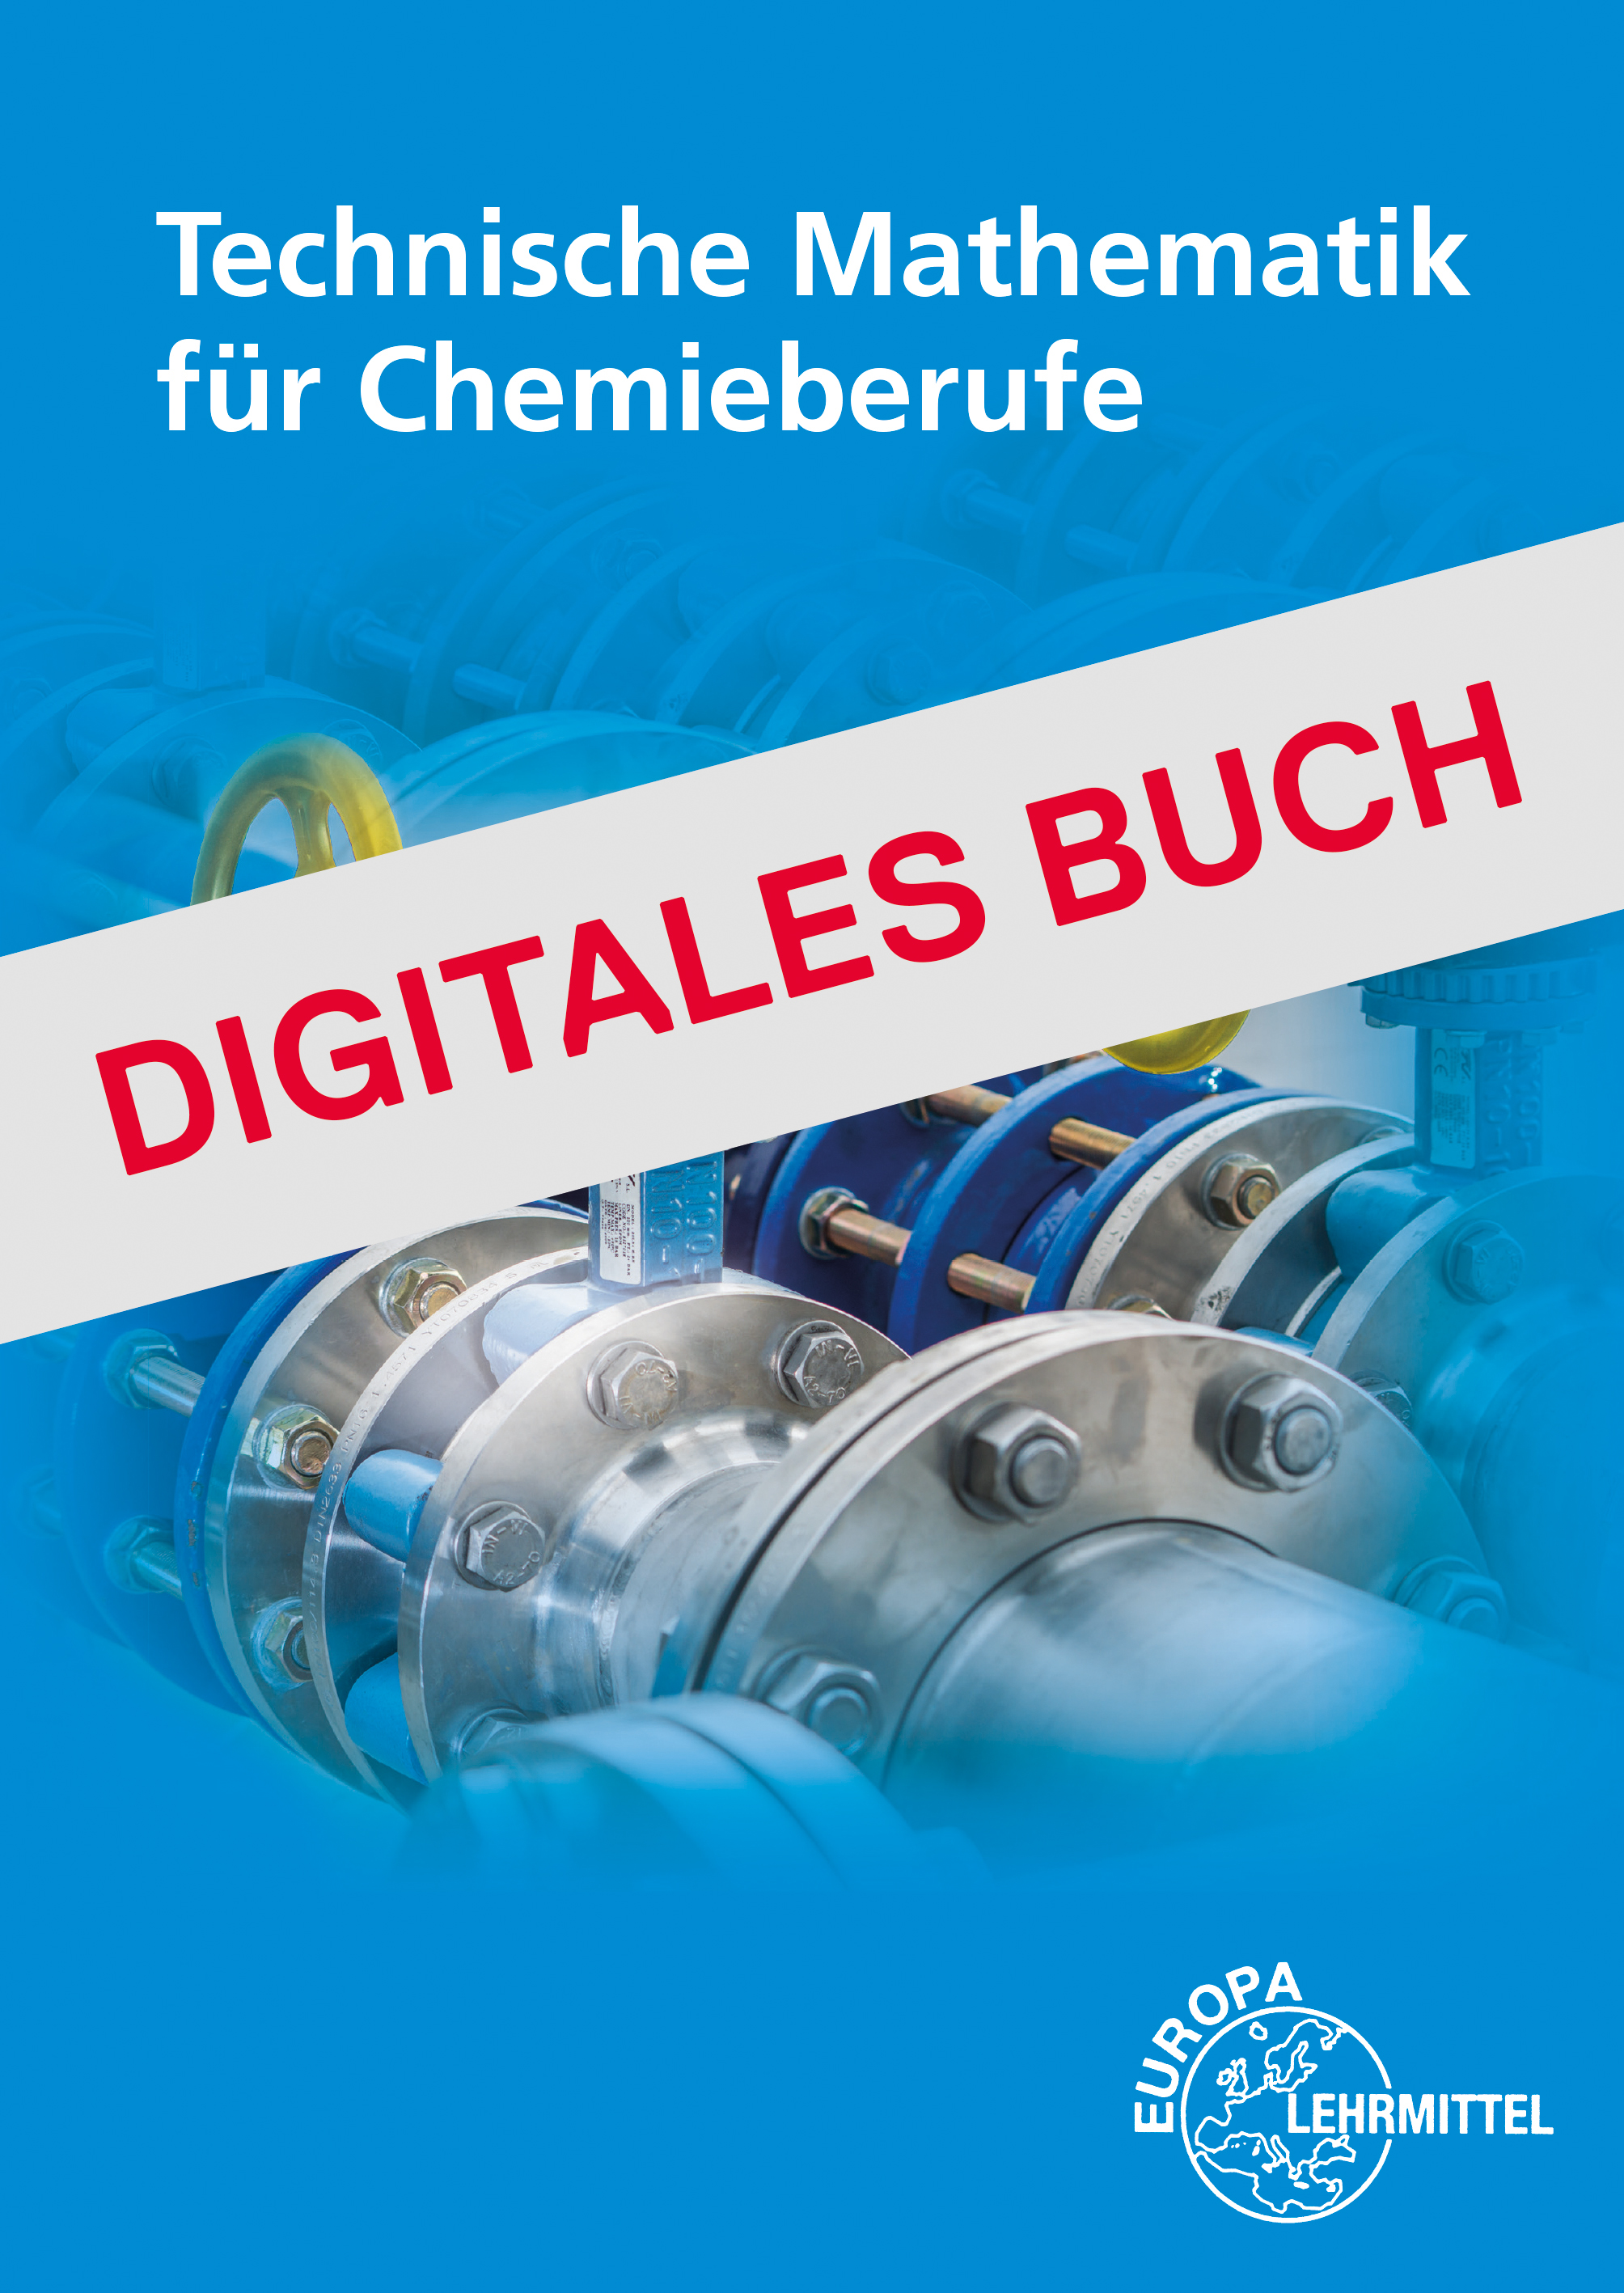 Technische Mathematik für Chemieberufe - Digitales Buch